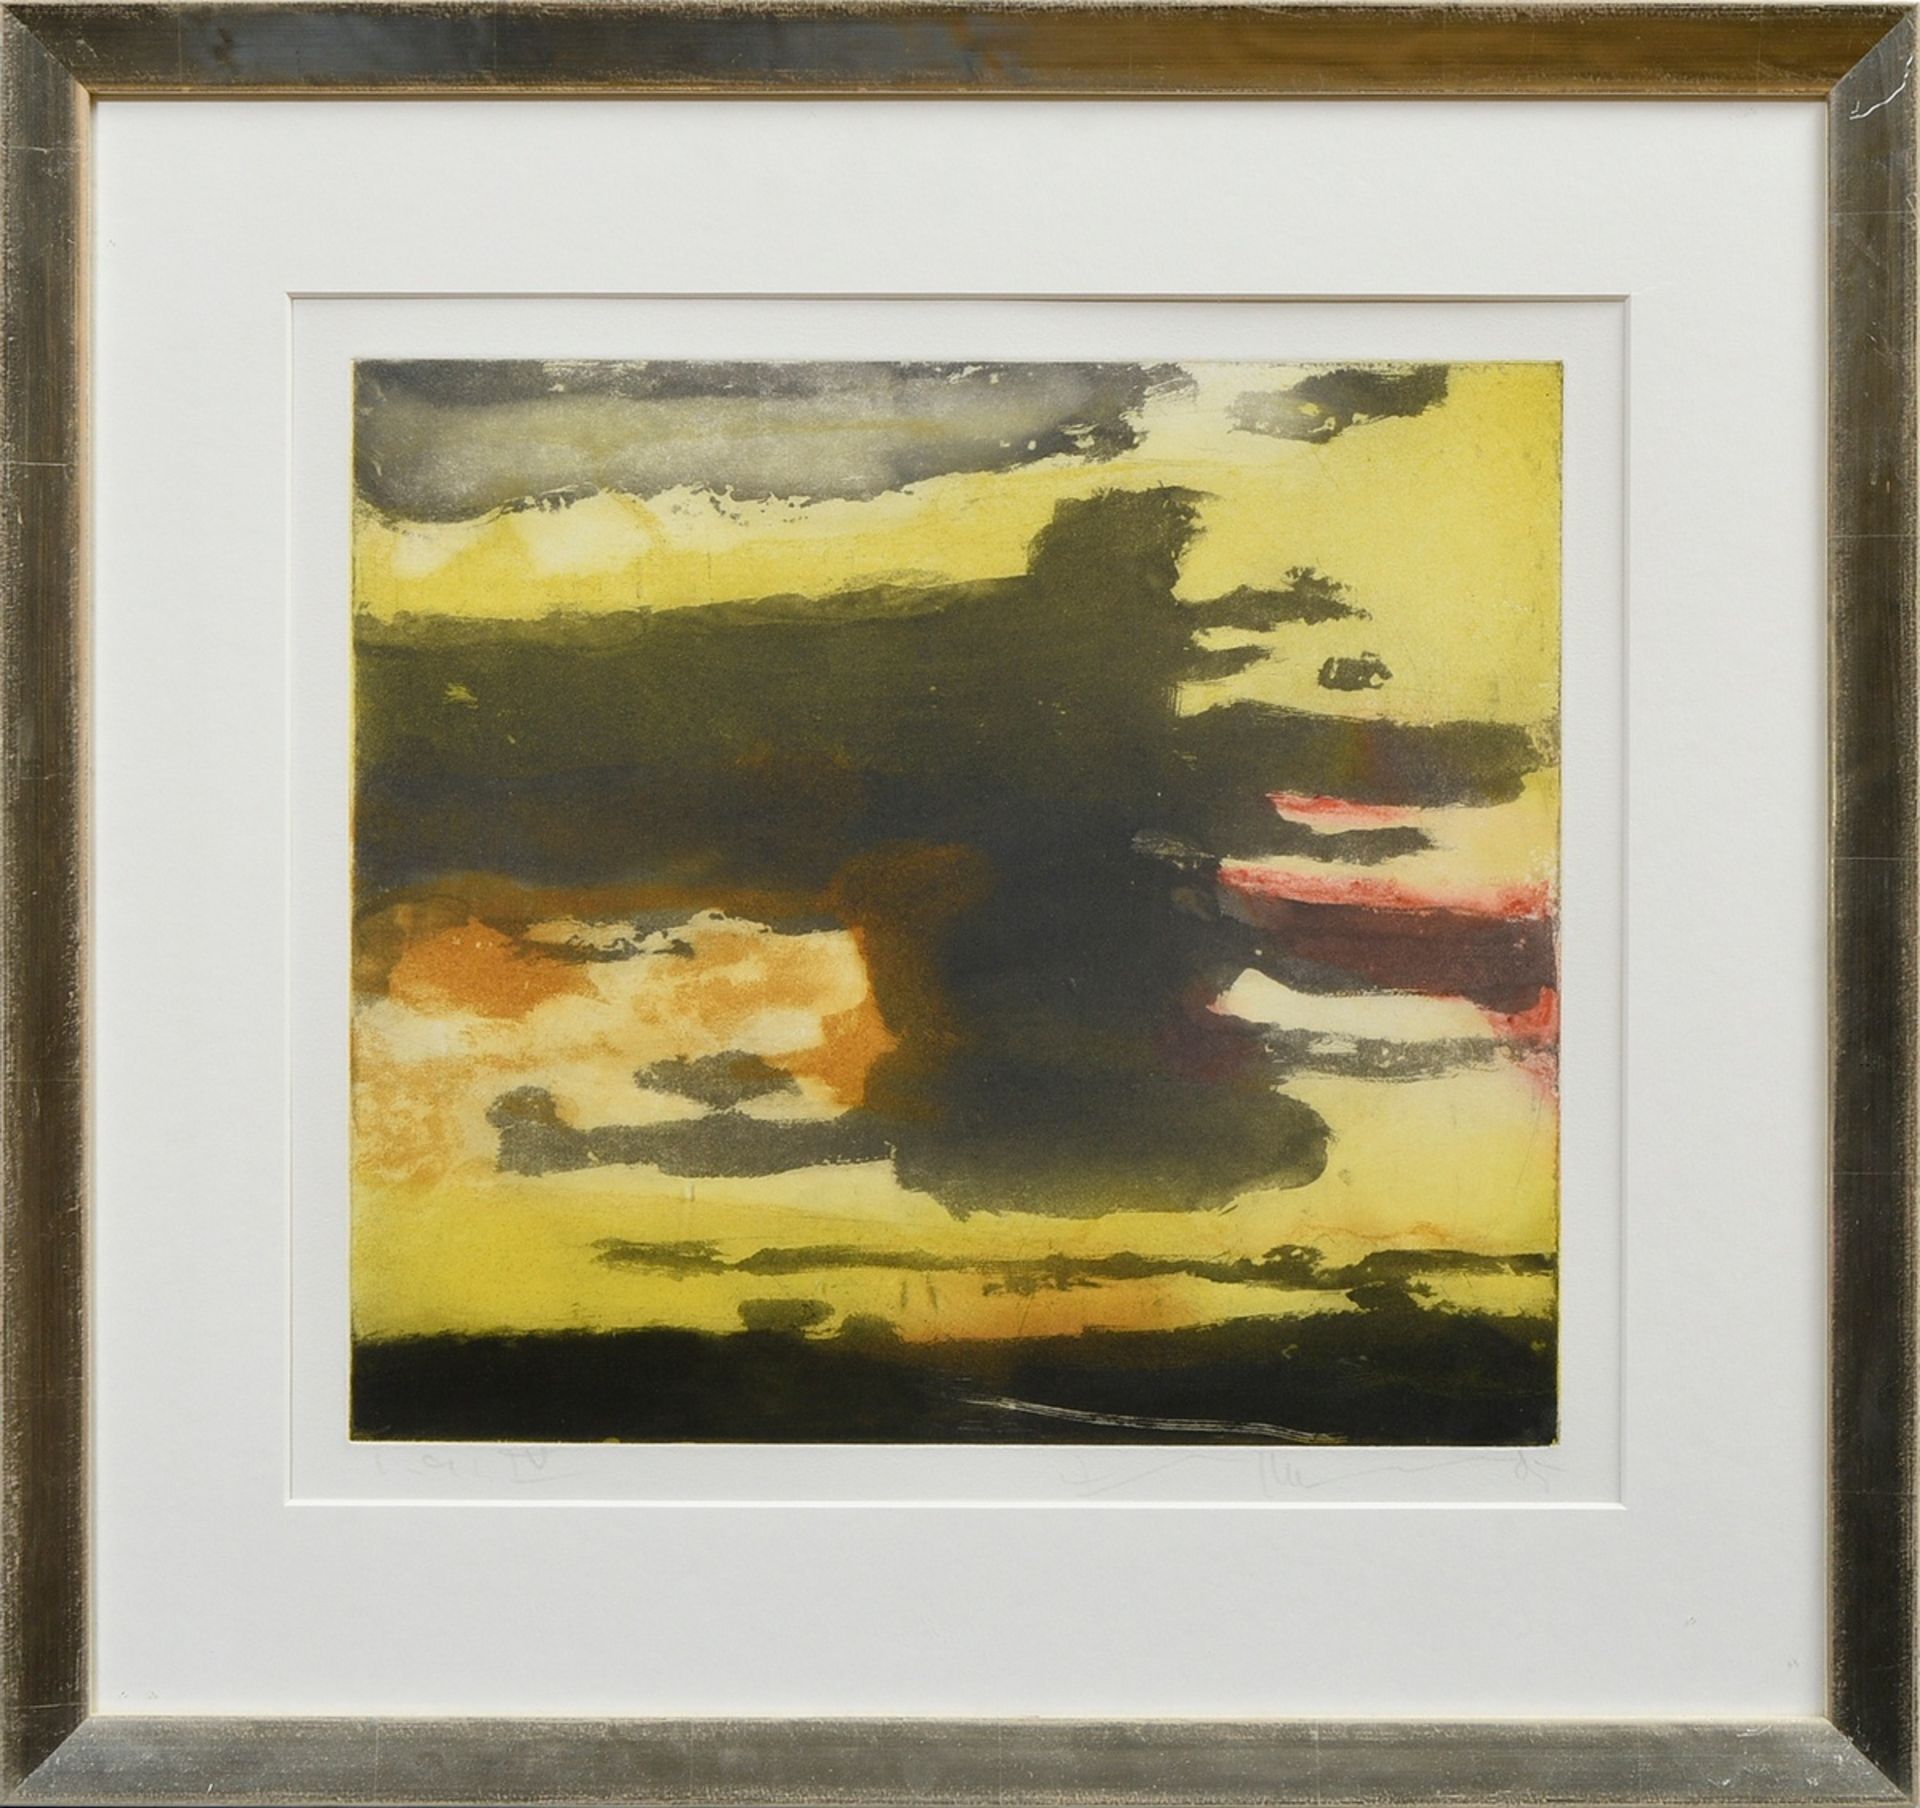 Fussmann, Klaus (*1938) "Sunset" 1985, colour etching, e.a./IV, b. sign./num./dat., PM 31,5x35,5cm - Image 2 of 3